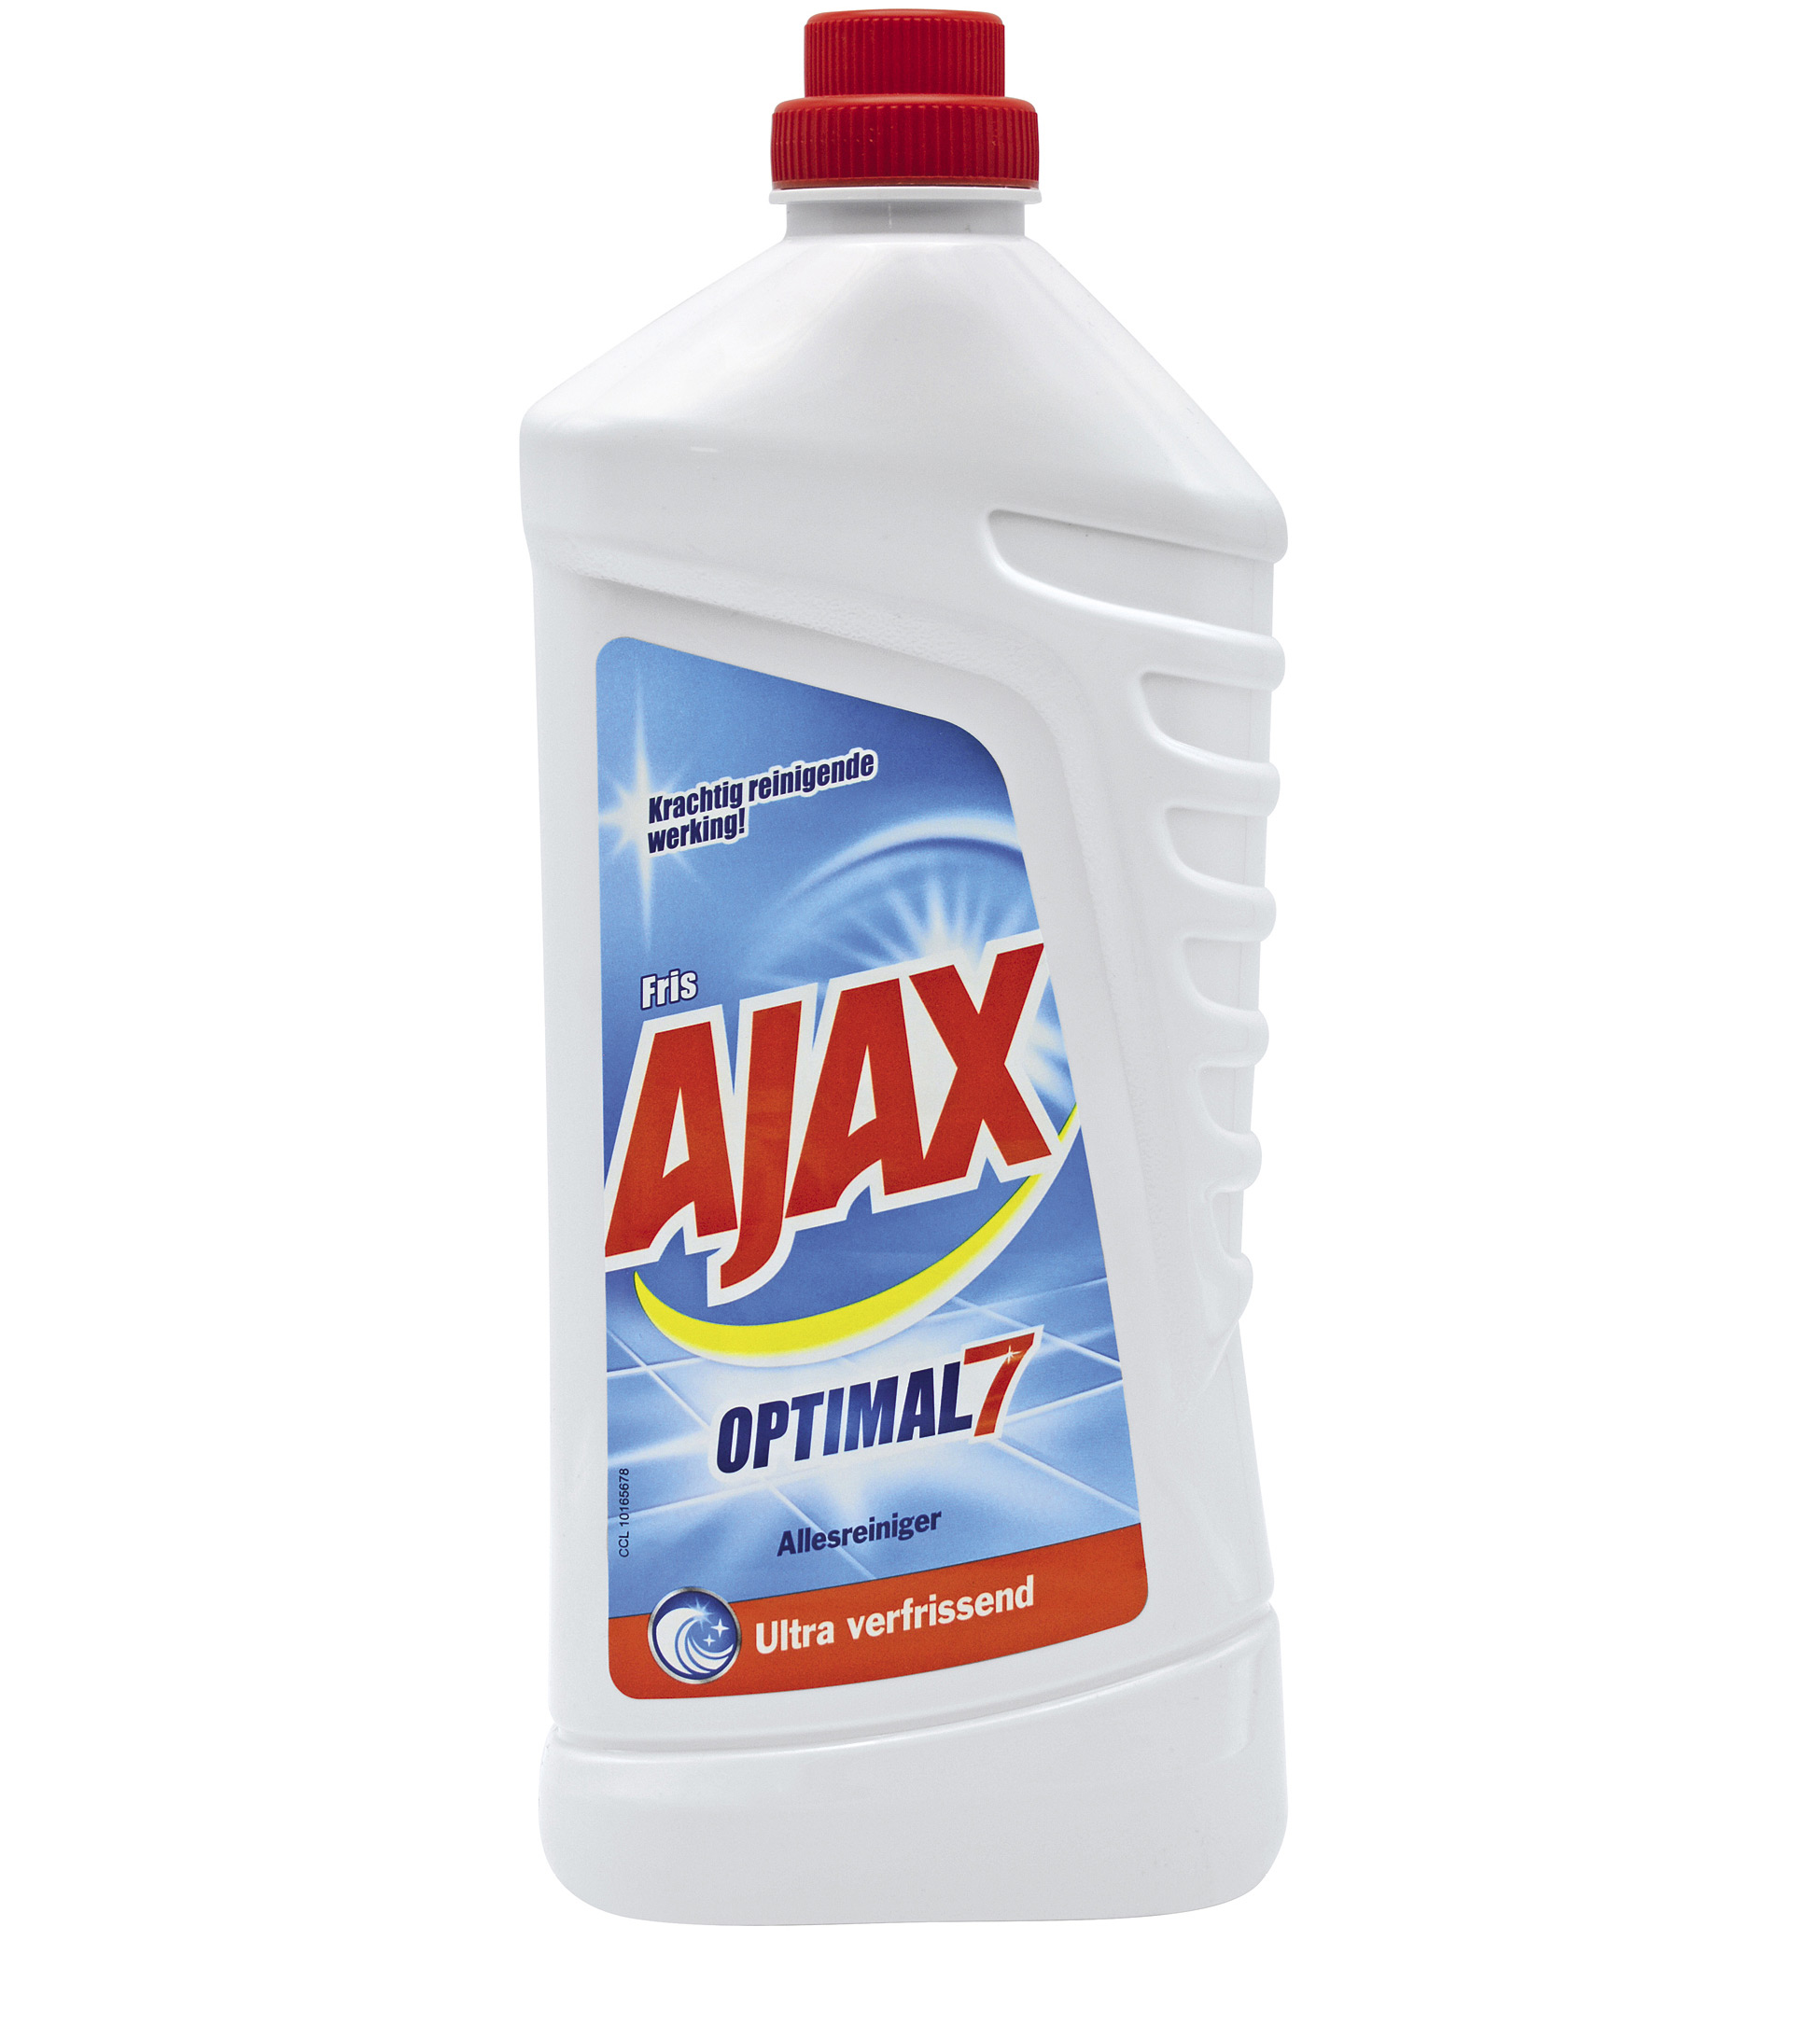 Etiketvelden Detergenten AJAX ZONDER NUMMERS 01